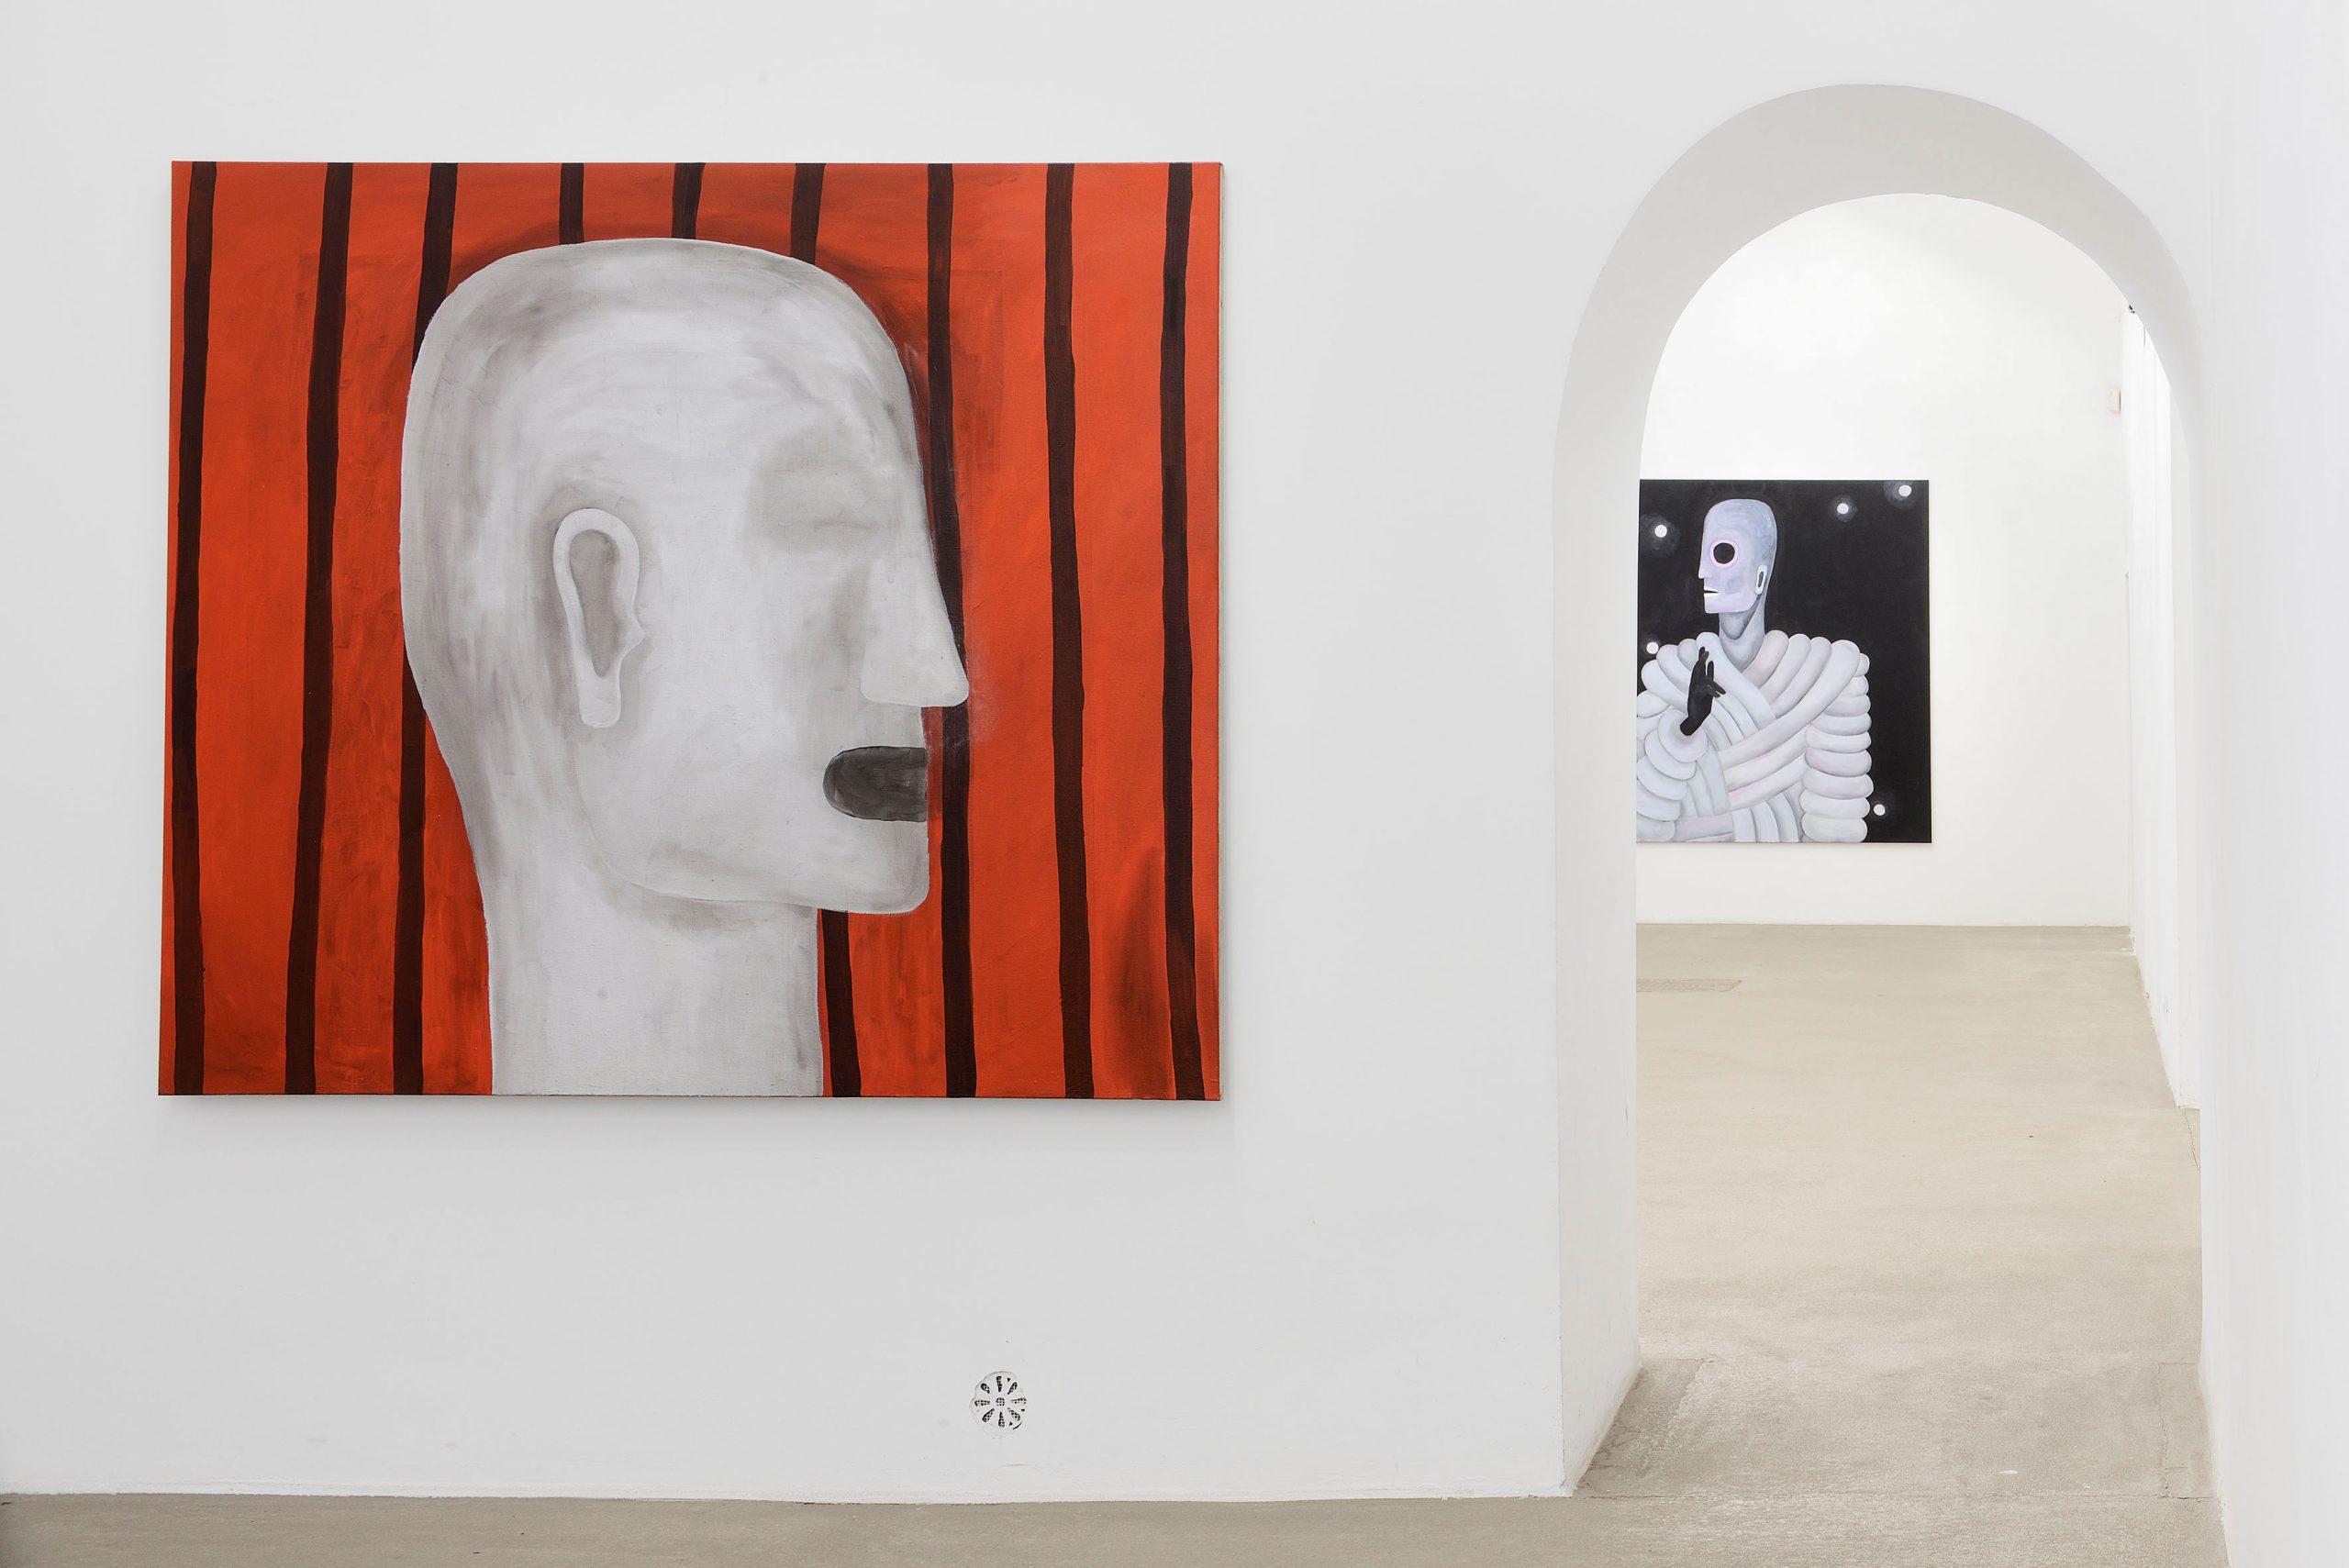 Raphaela Simon ‘Blaue Nacht’, installation view Fondazione Giuliani, maggio – luglio 2023, crediti fotografici Roberto Apa